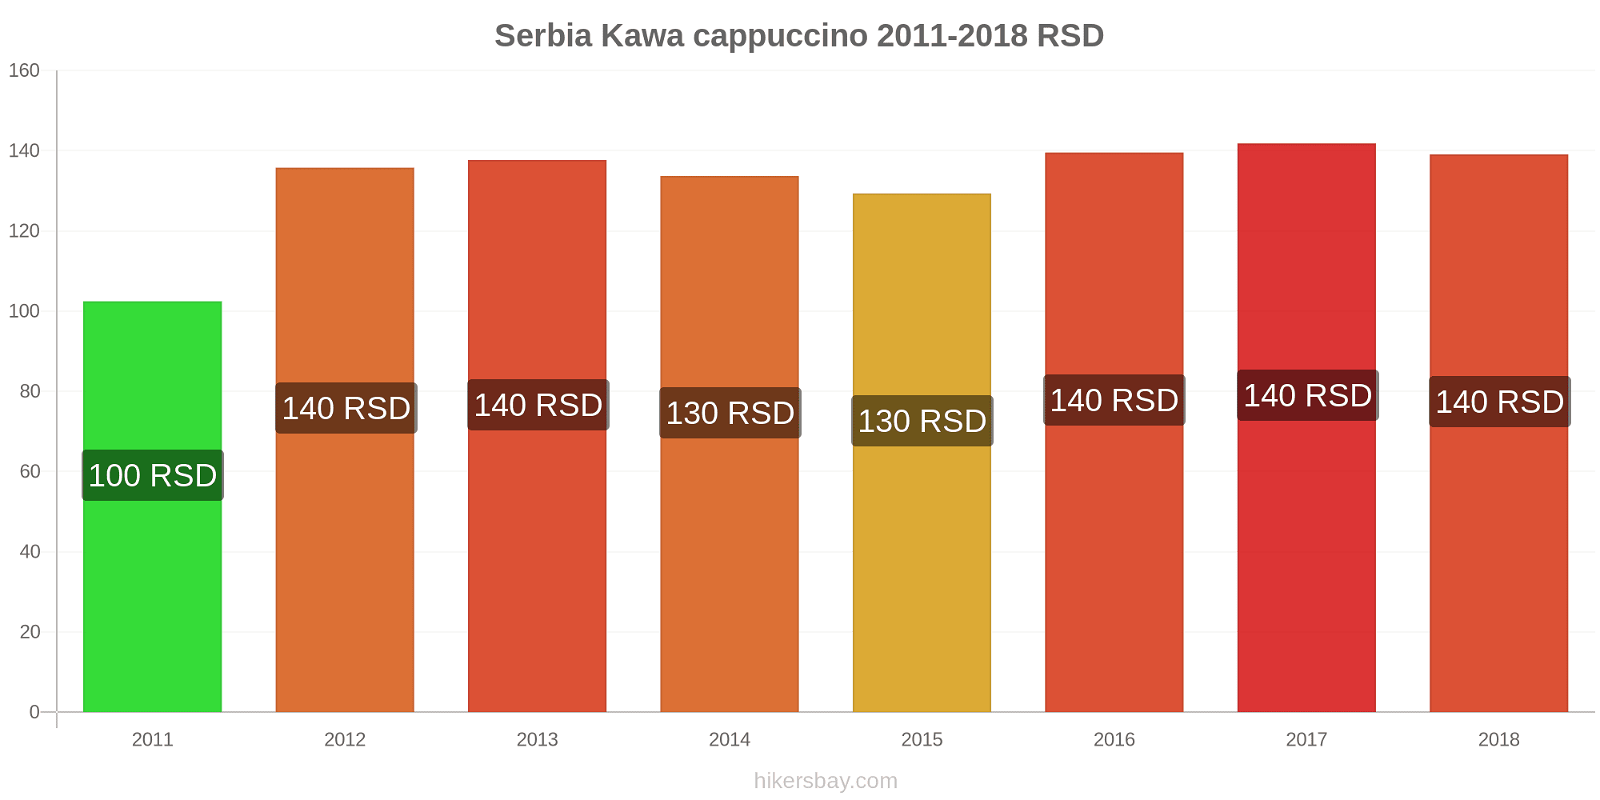 Serbia zmiany cen Kawa cappuccino hikersbay.com